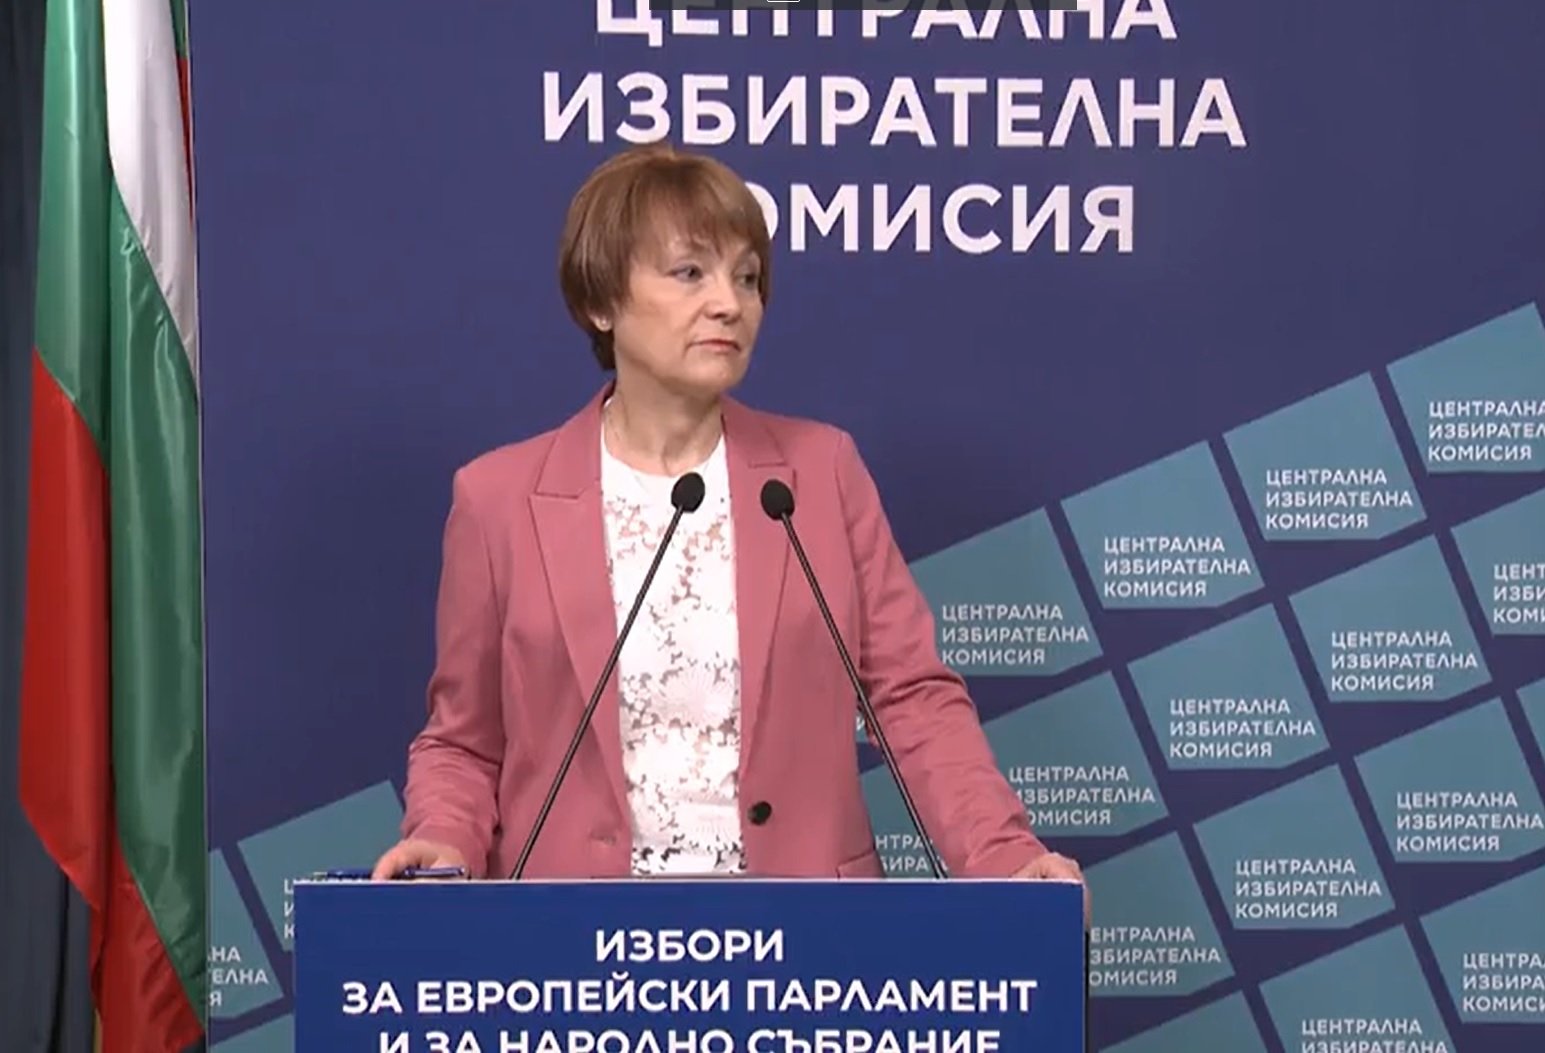 Росица Матева каза кога ЦИК ще обяви официалните резултати от изборите